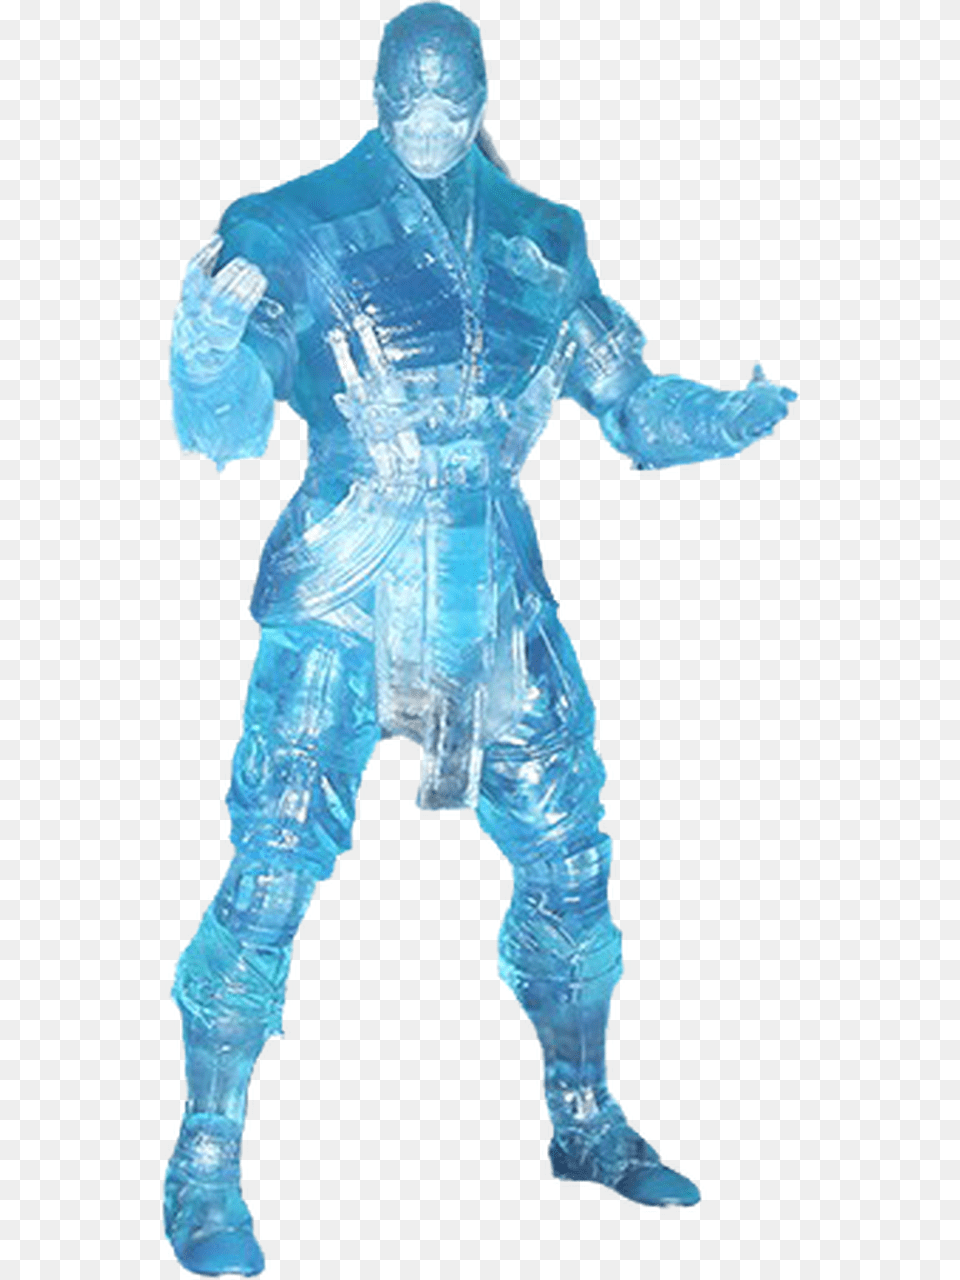 Subzero Ice Clone Costume, Person, Man, Male, Adult Png